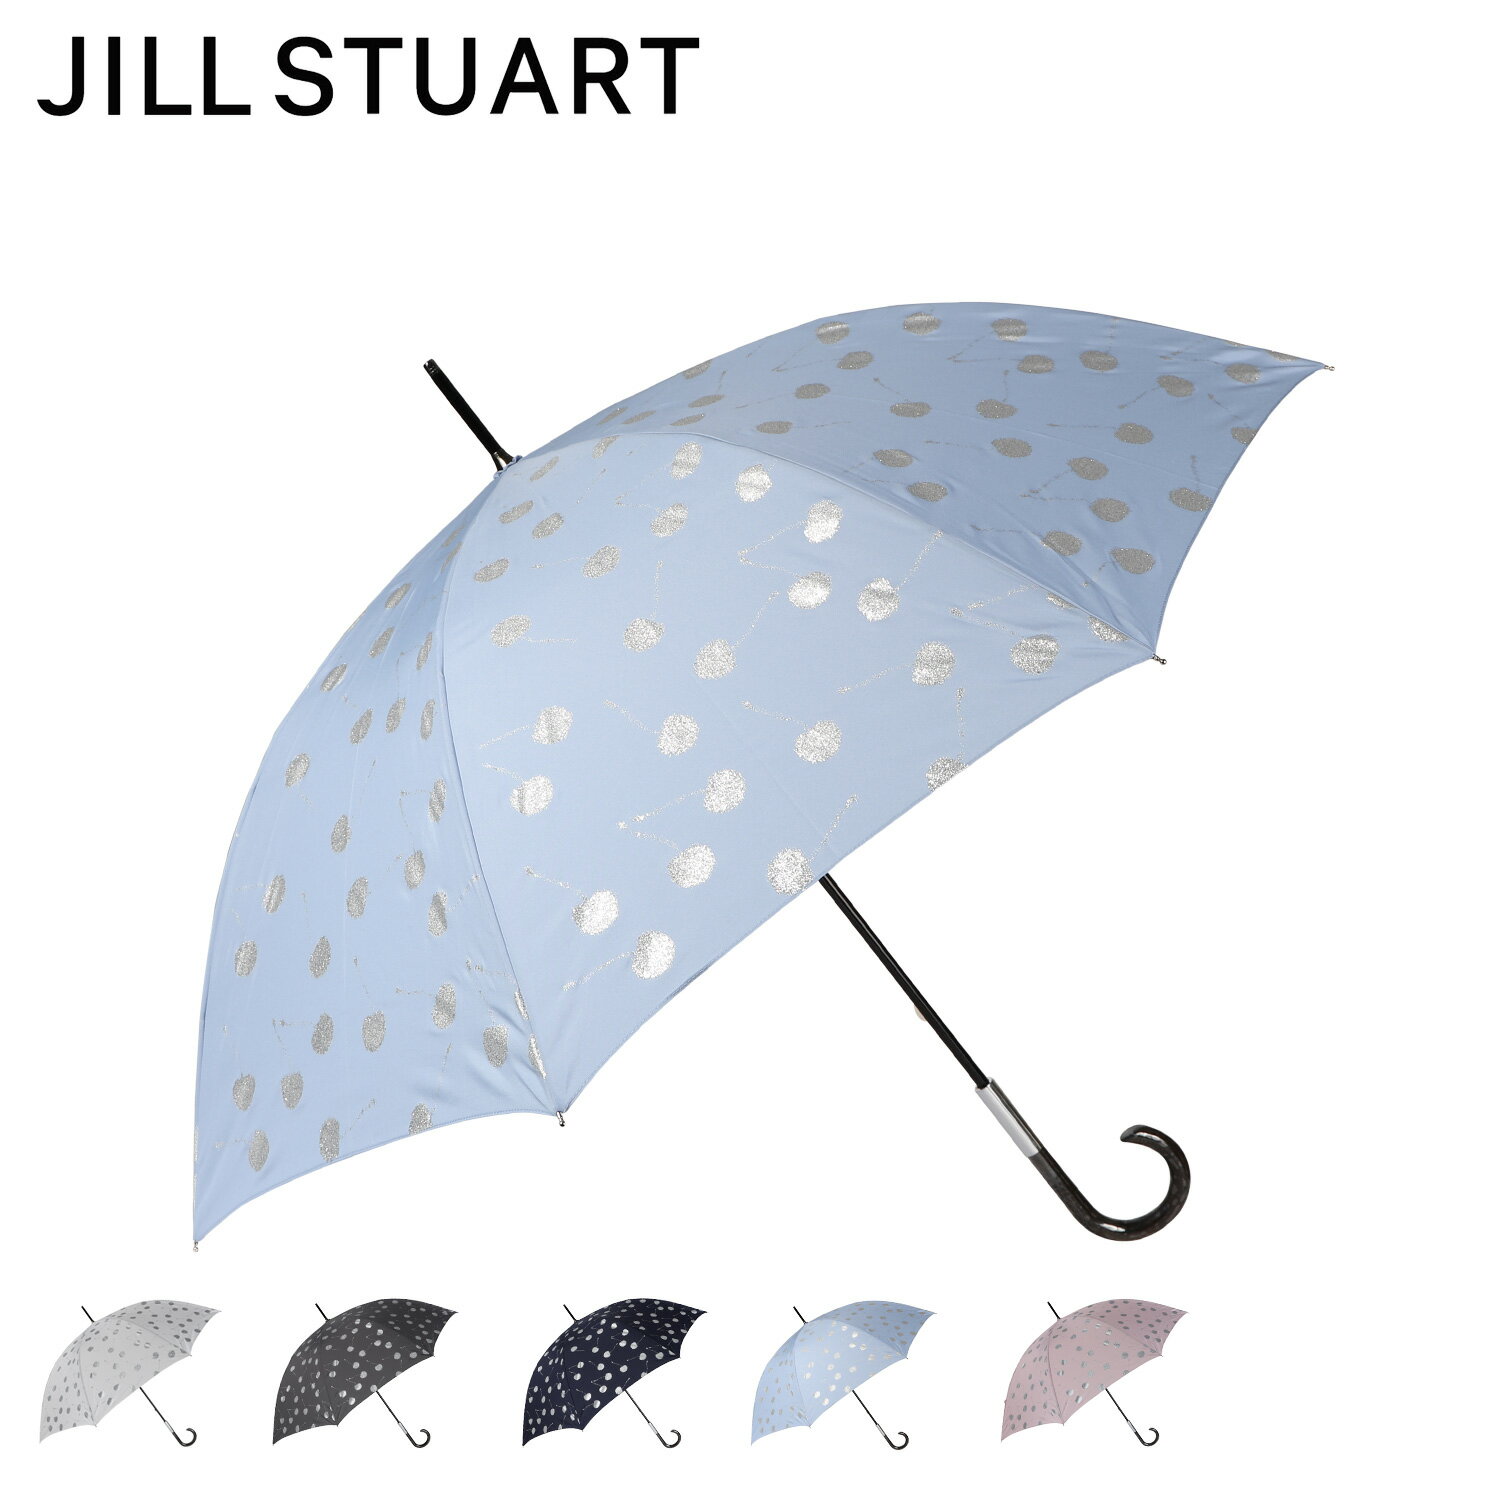 ジル スチュアート 傘 JILLSTUART ジルスチュアート 長傘 雨傘 レディース 60cm 軽量 オフ ホワイト グレー ネイビー ブルー ピンク 1JI11027 母の日